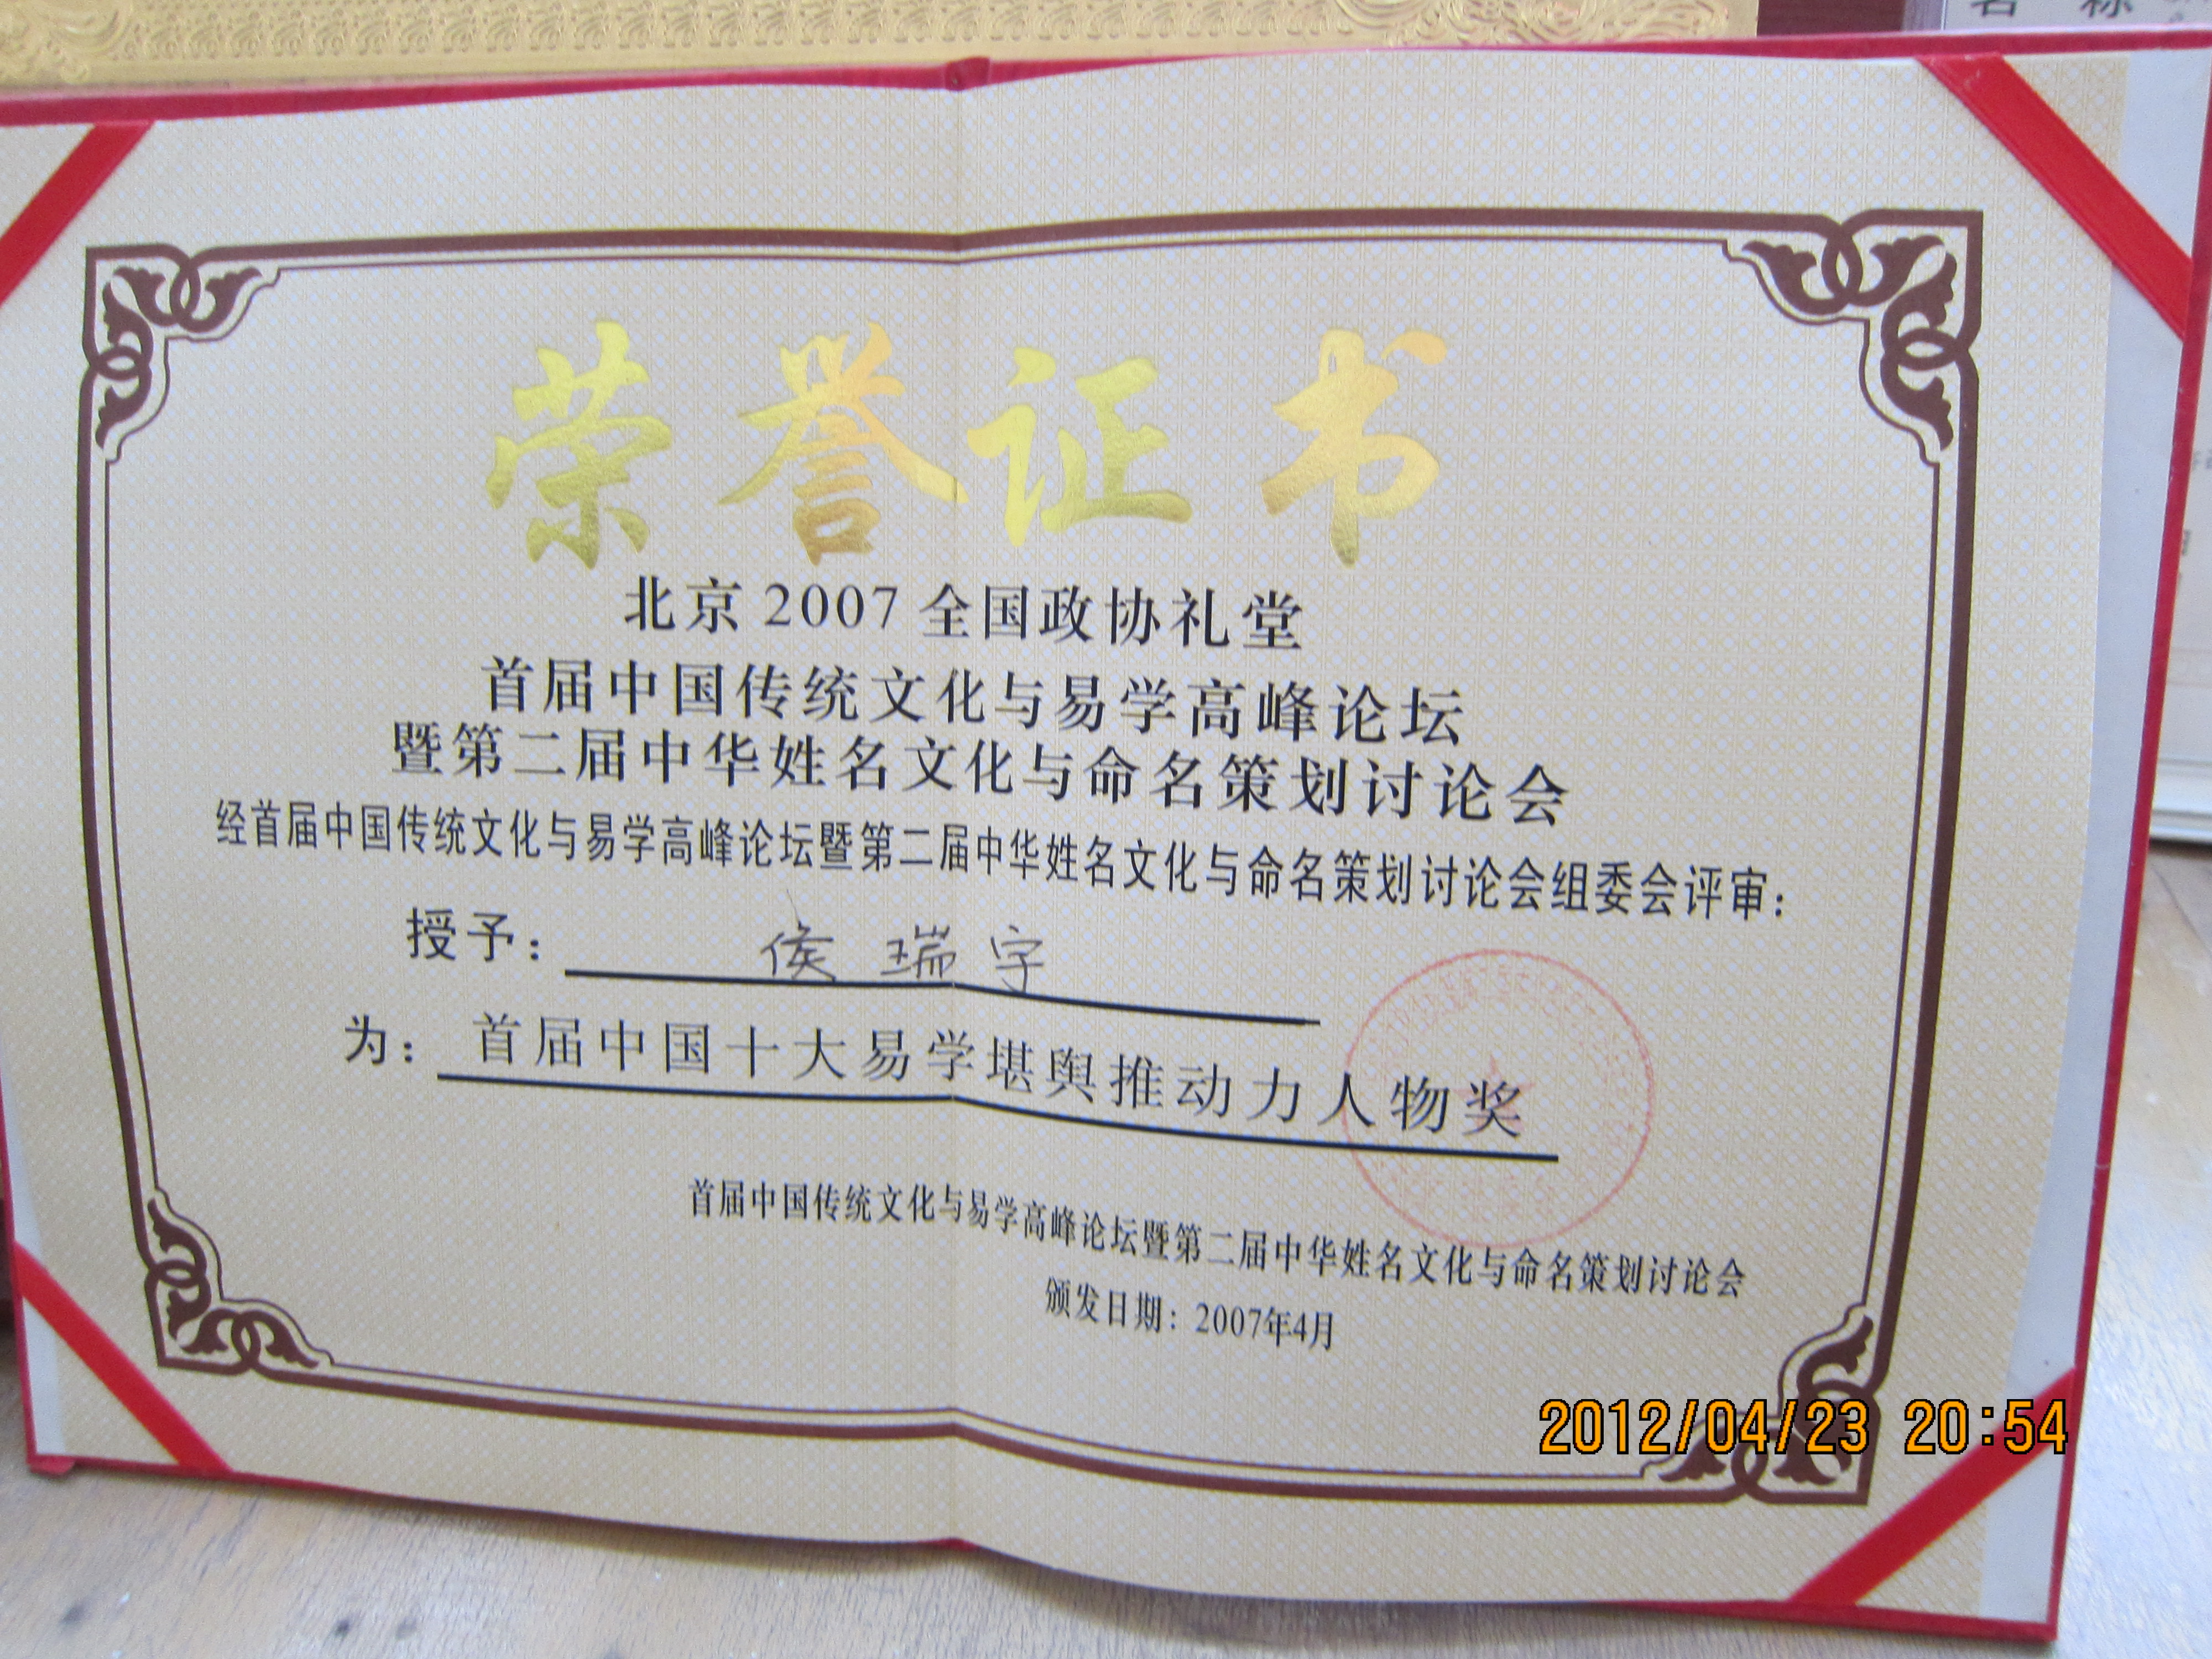 侯瑞宇先生在“首届中国传统文化与易学高峰论坛”上被授予“首届中国十大易学堪舆推动力人物奖”（全国政协礼堂）